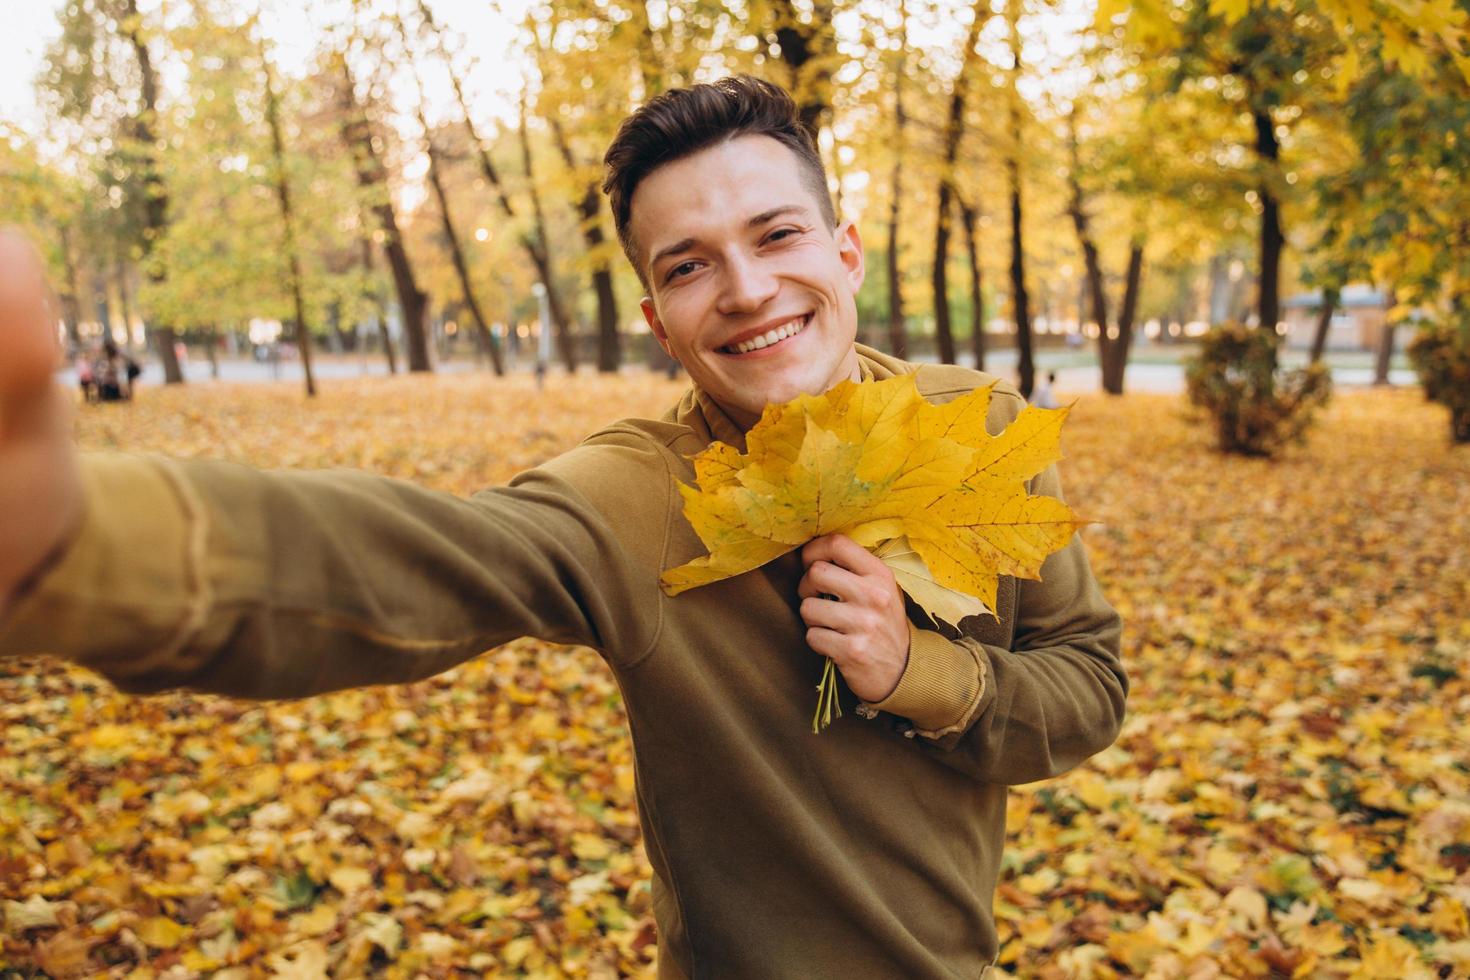 cara segurando um buquê de folhas de outono e tirando uma selfie no parque foto